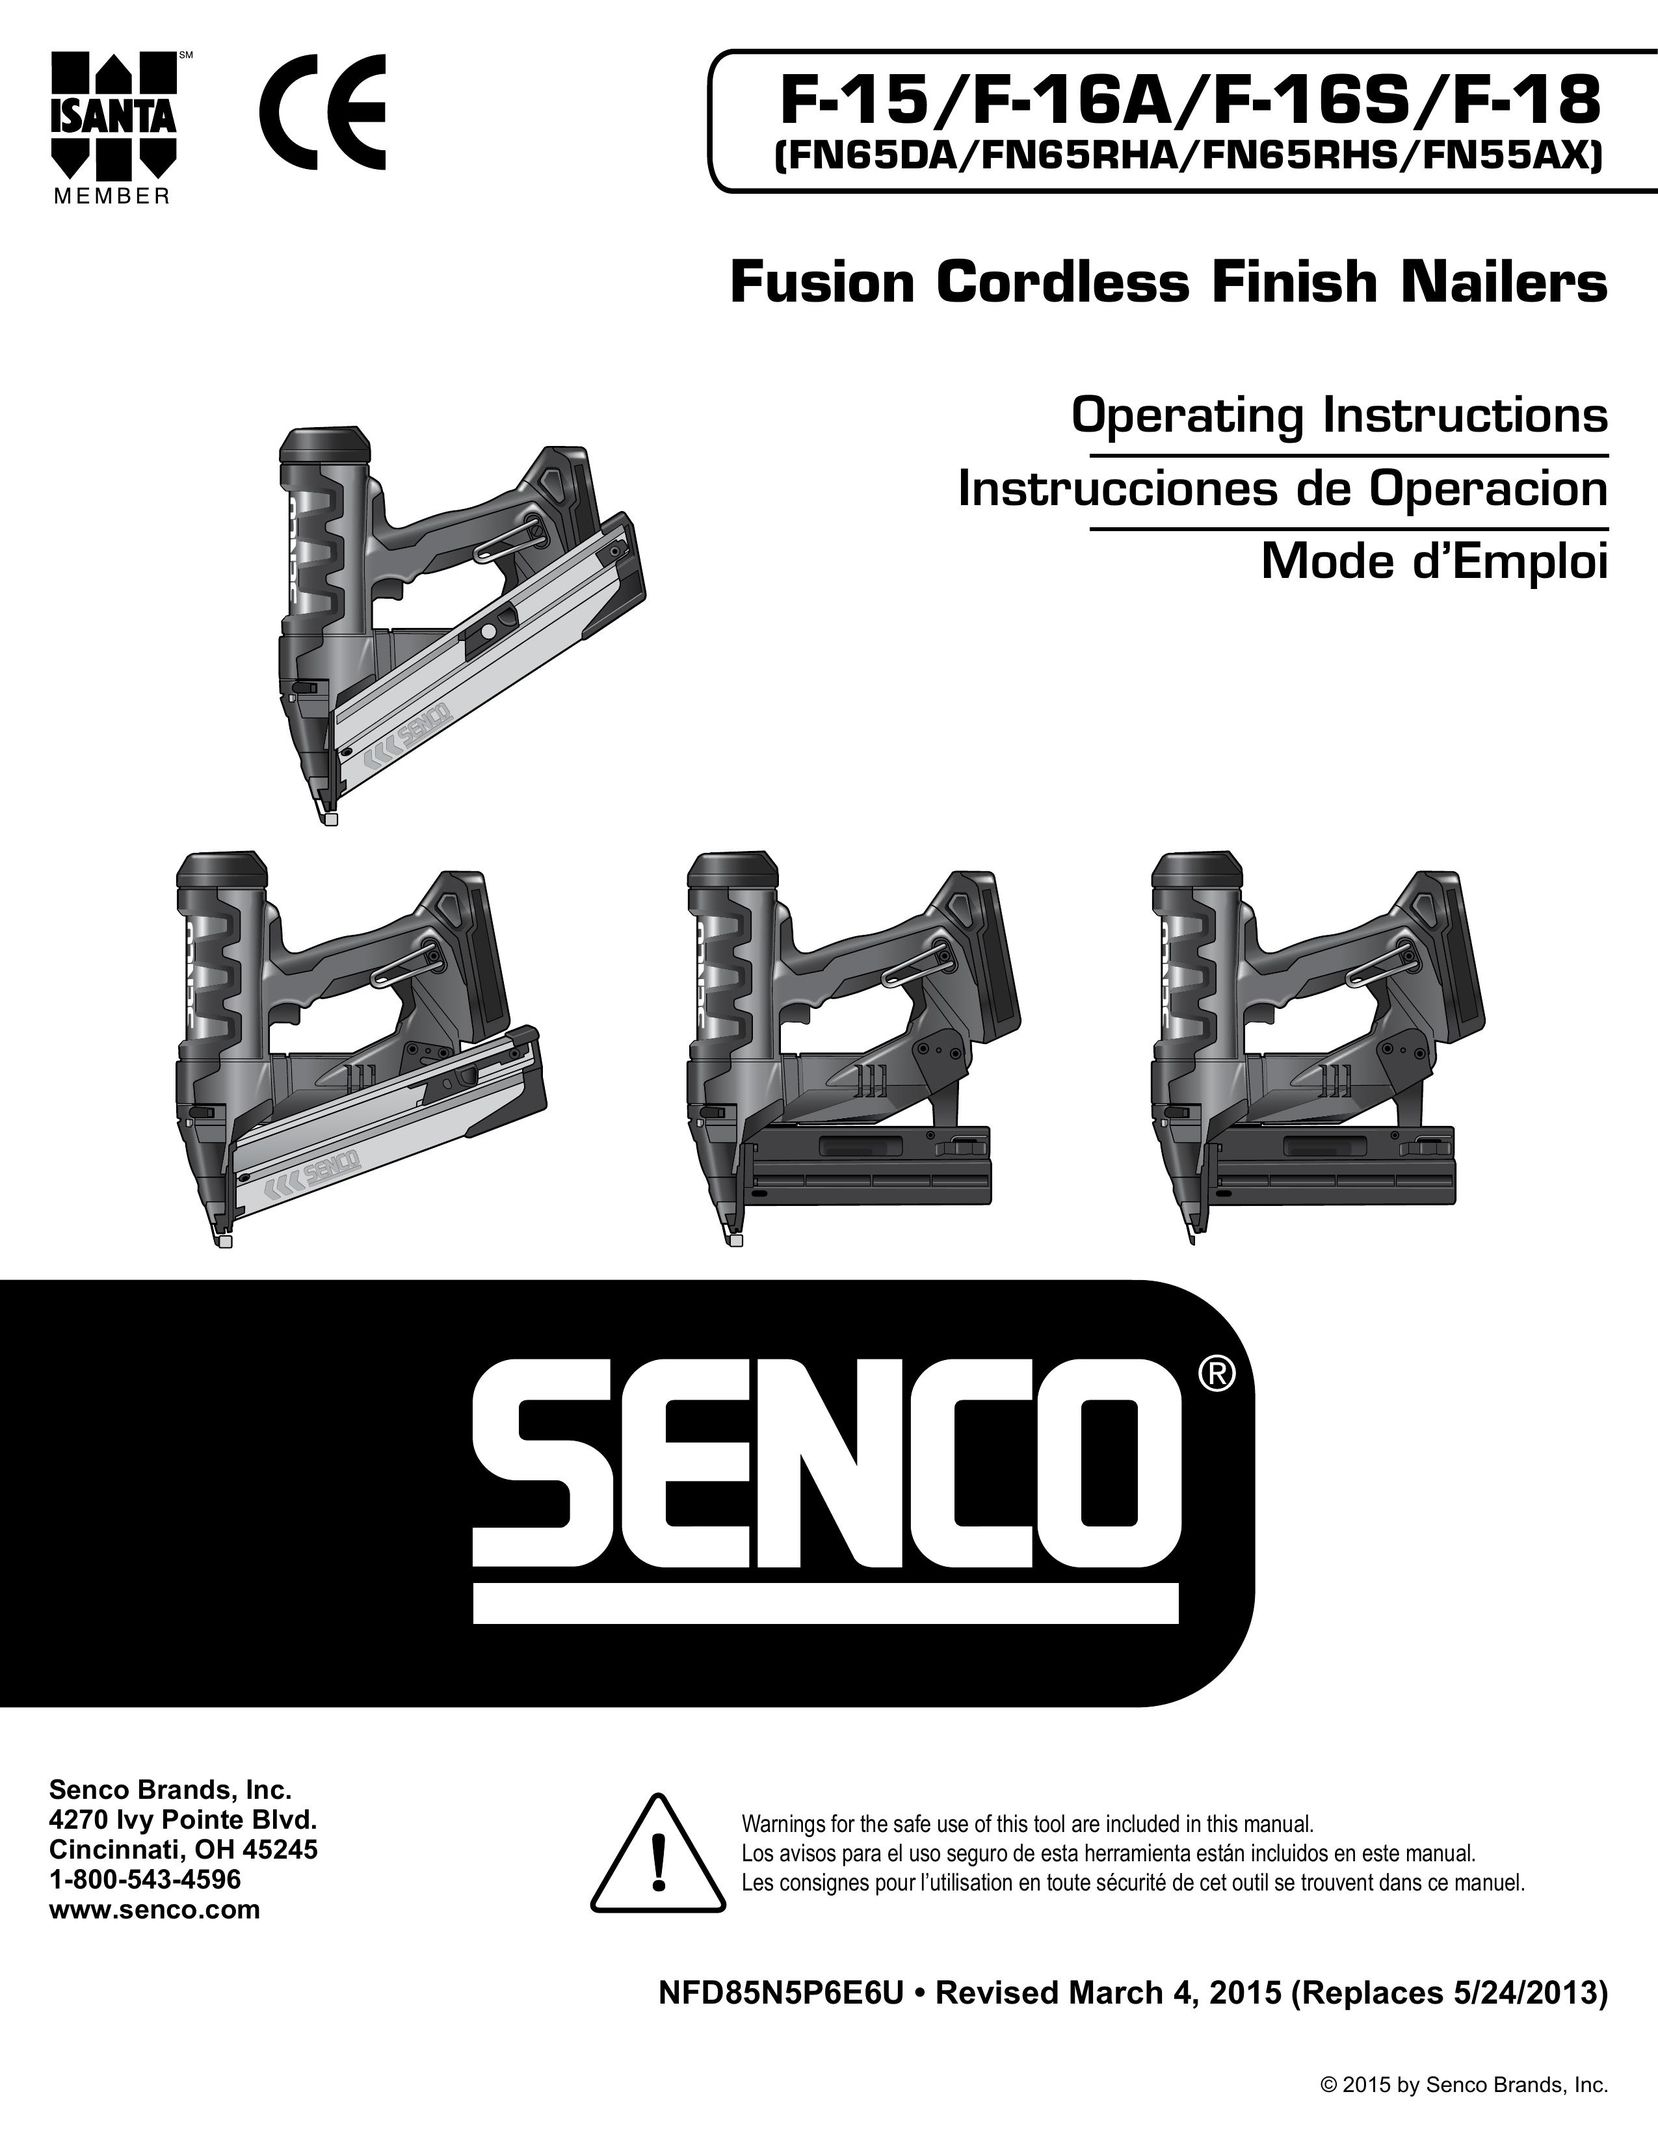 Senco FN65RHS Nail Gun User Manual